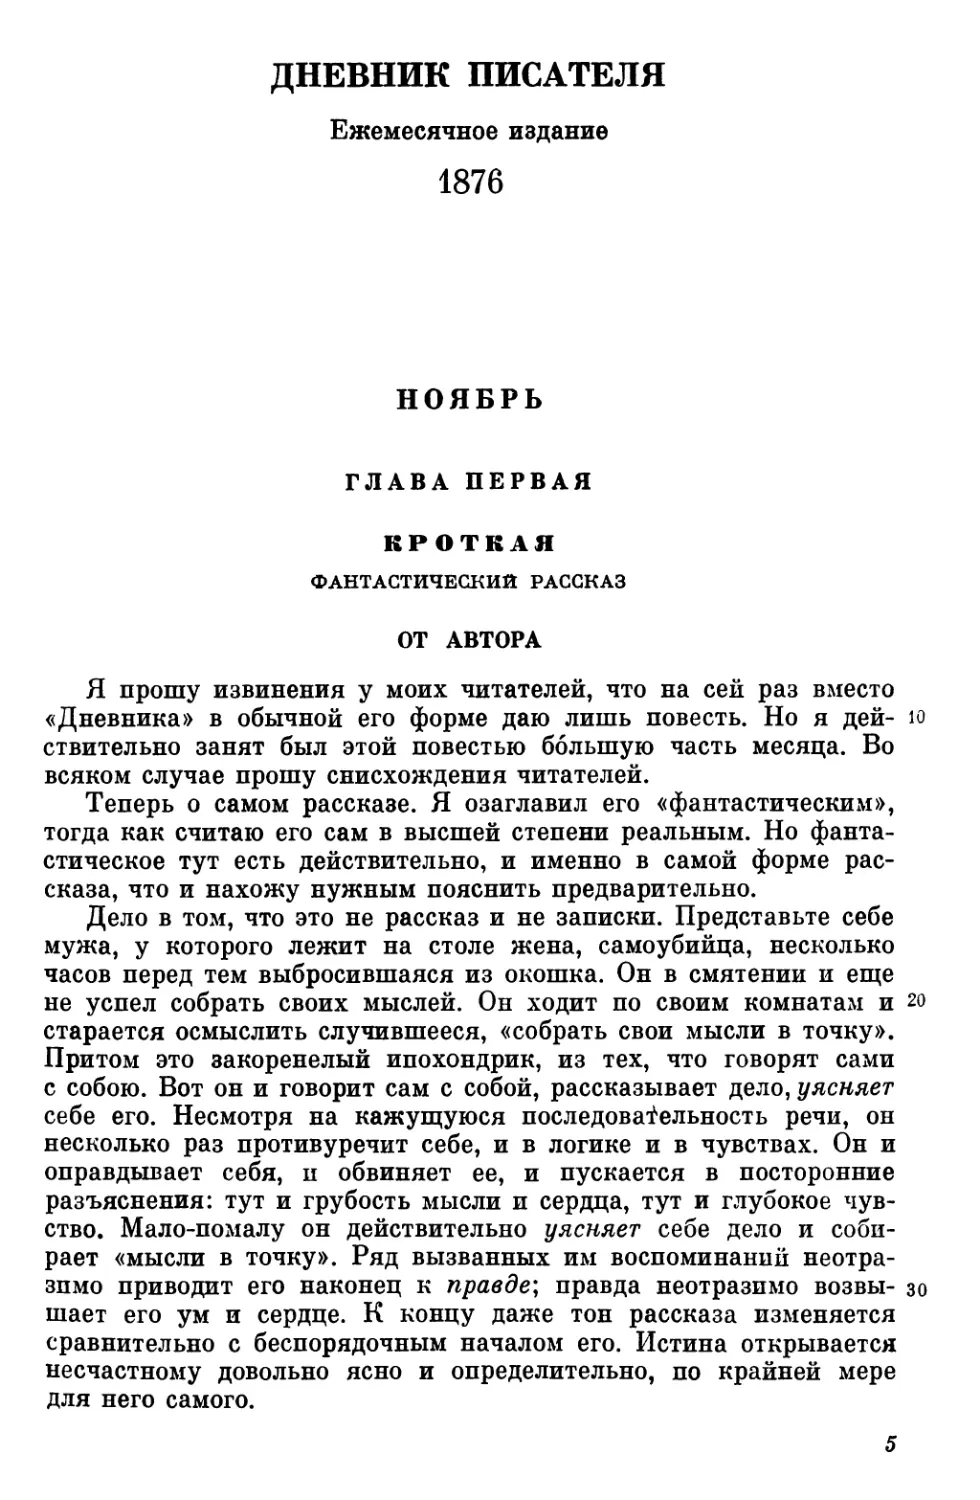 ДНЕВНИК ПИСАТЕЛЯ. 1876
Ноябрь